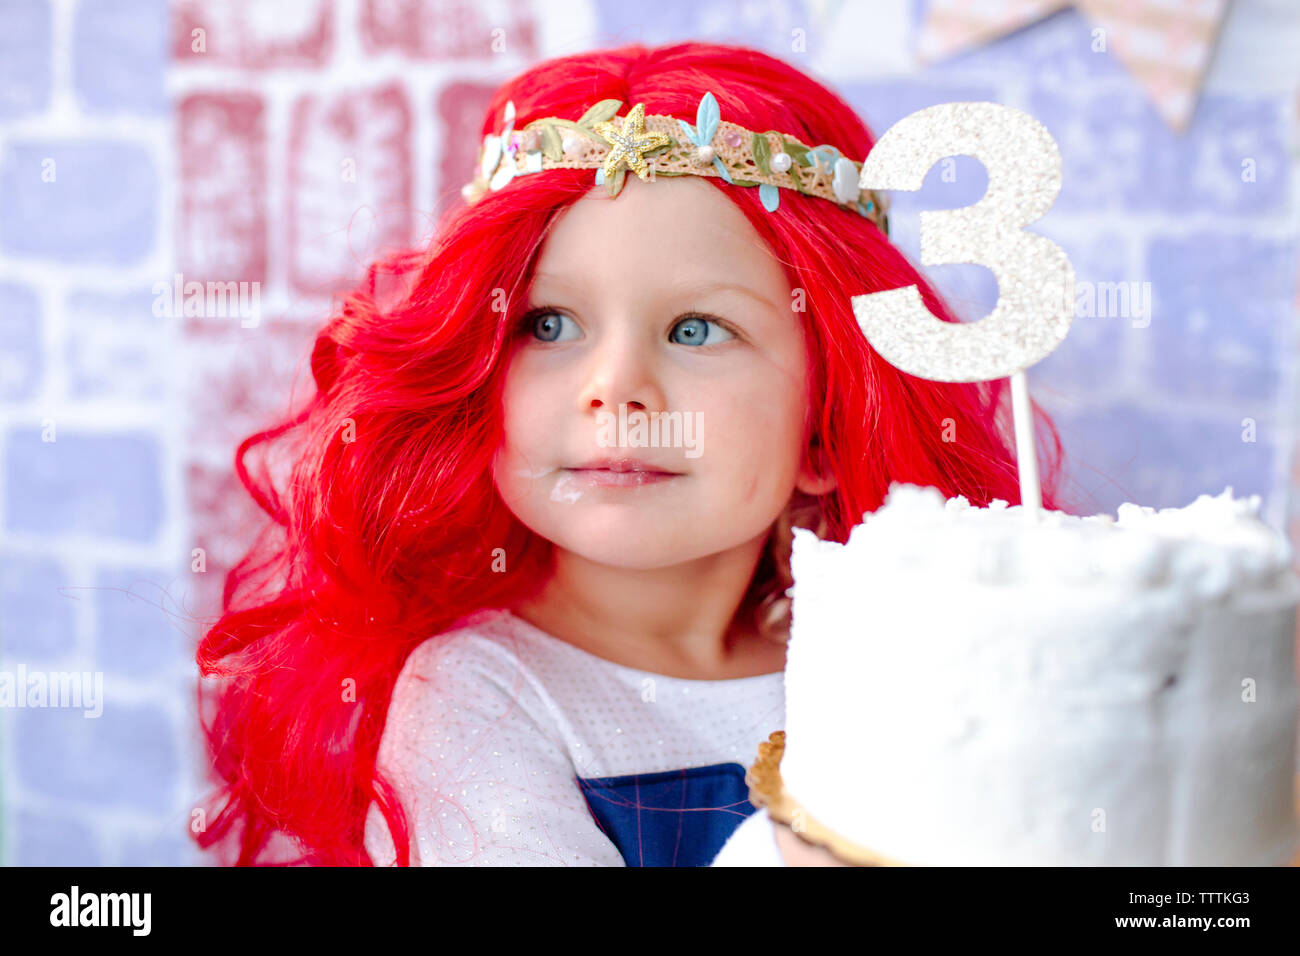 Close-up of girl holding cake avec le numéro 3 au cours de la princesse partie Banque D'Images